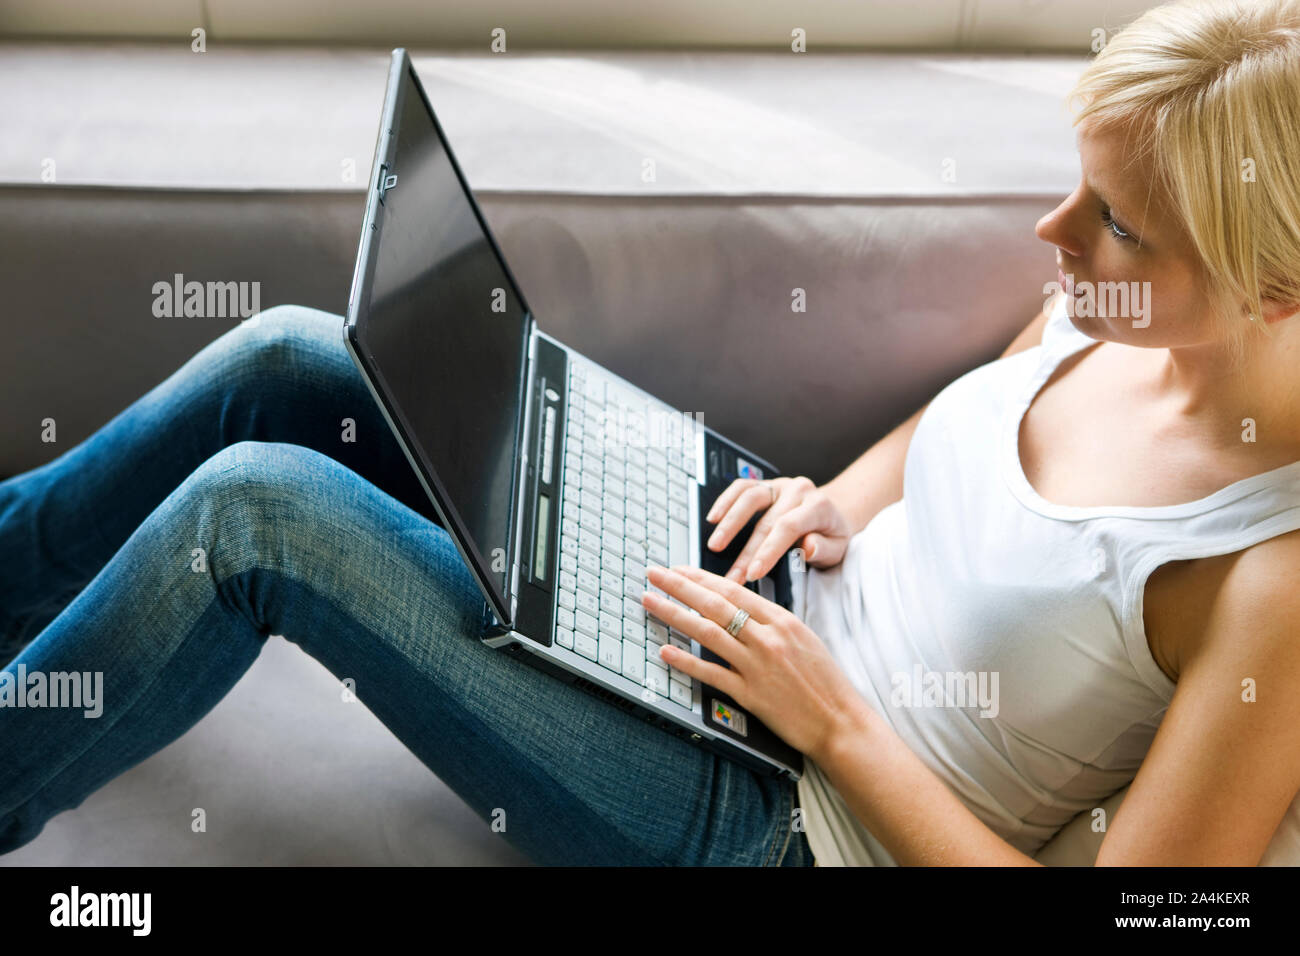 Schreiben auf einem Laptop - Internet-dating-chatten Stockfoto